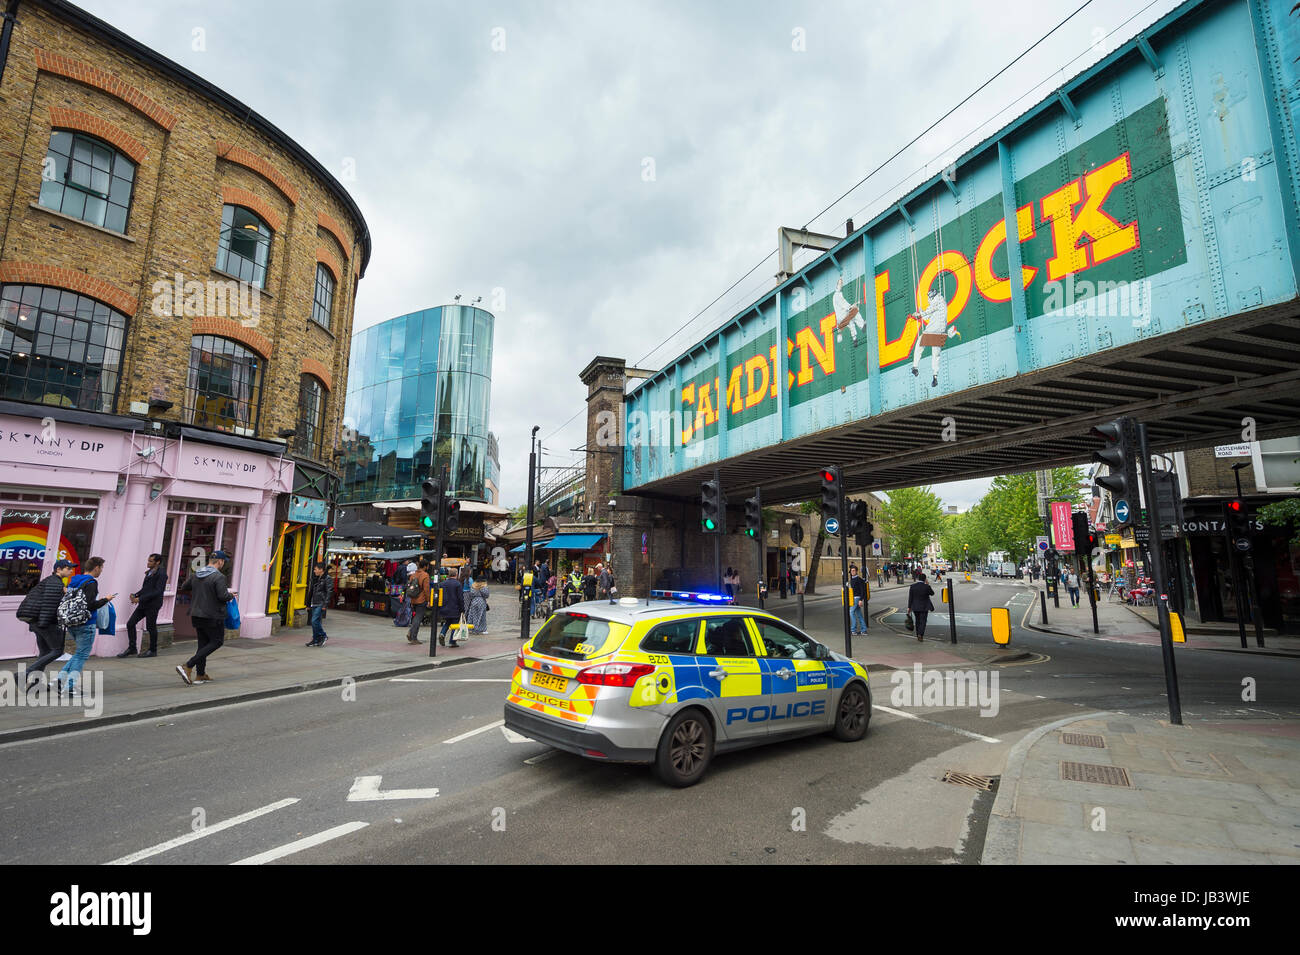 Londra - Giugno 8, 2017: Polizia auto passando attraverso il Camden Lock area di Londra il giorno delle elezioni. Foto Stock